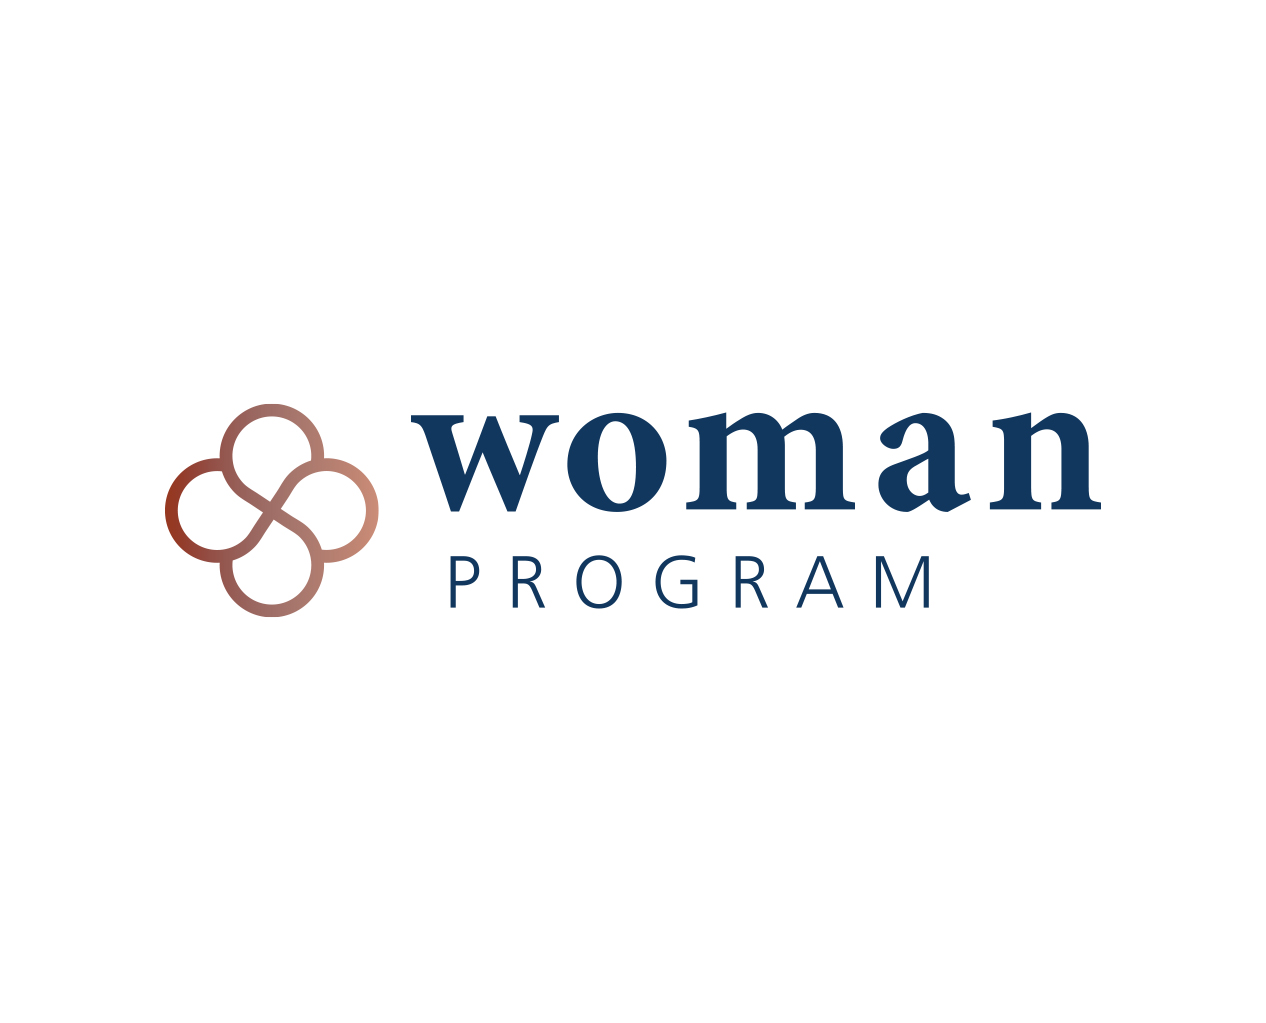 WOMAN Program Logo